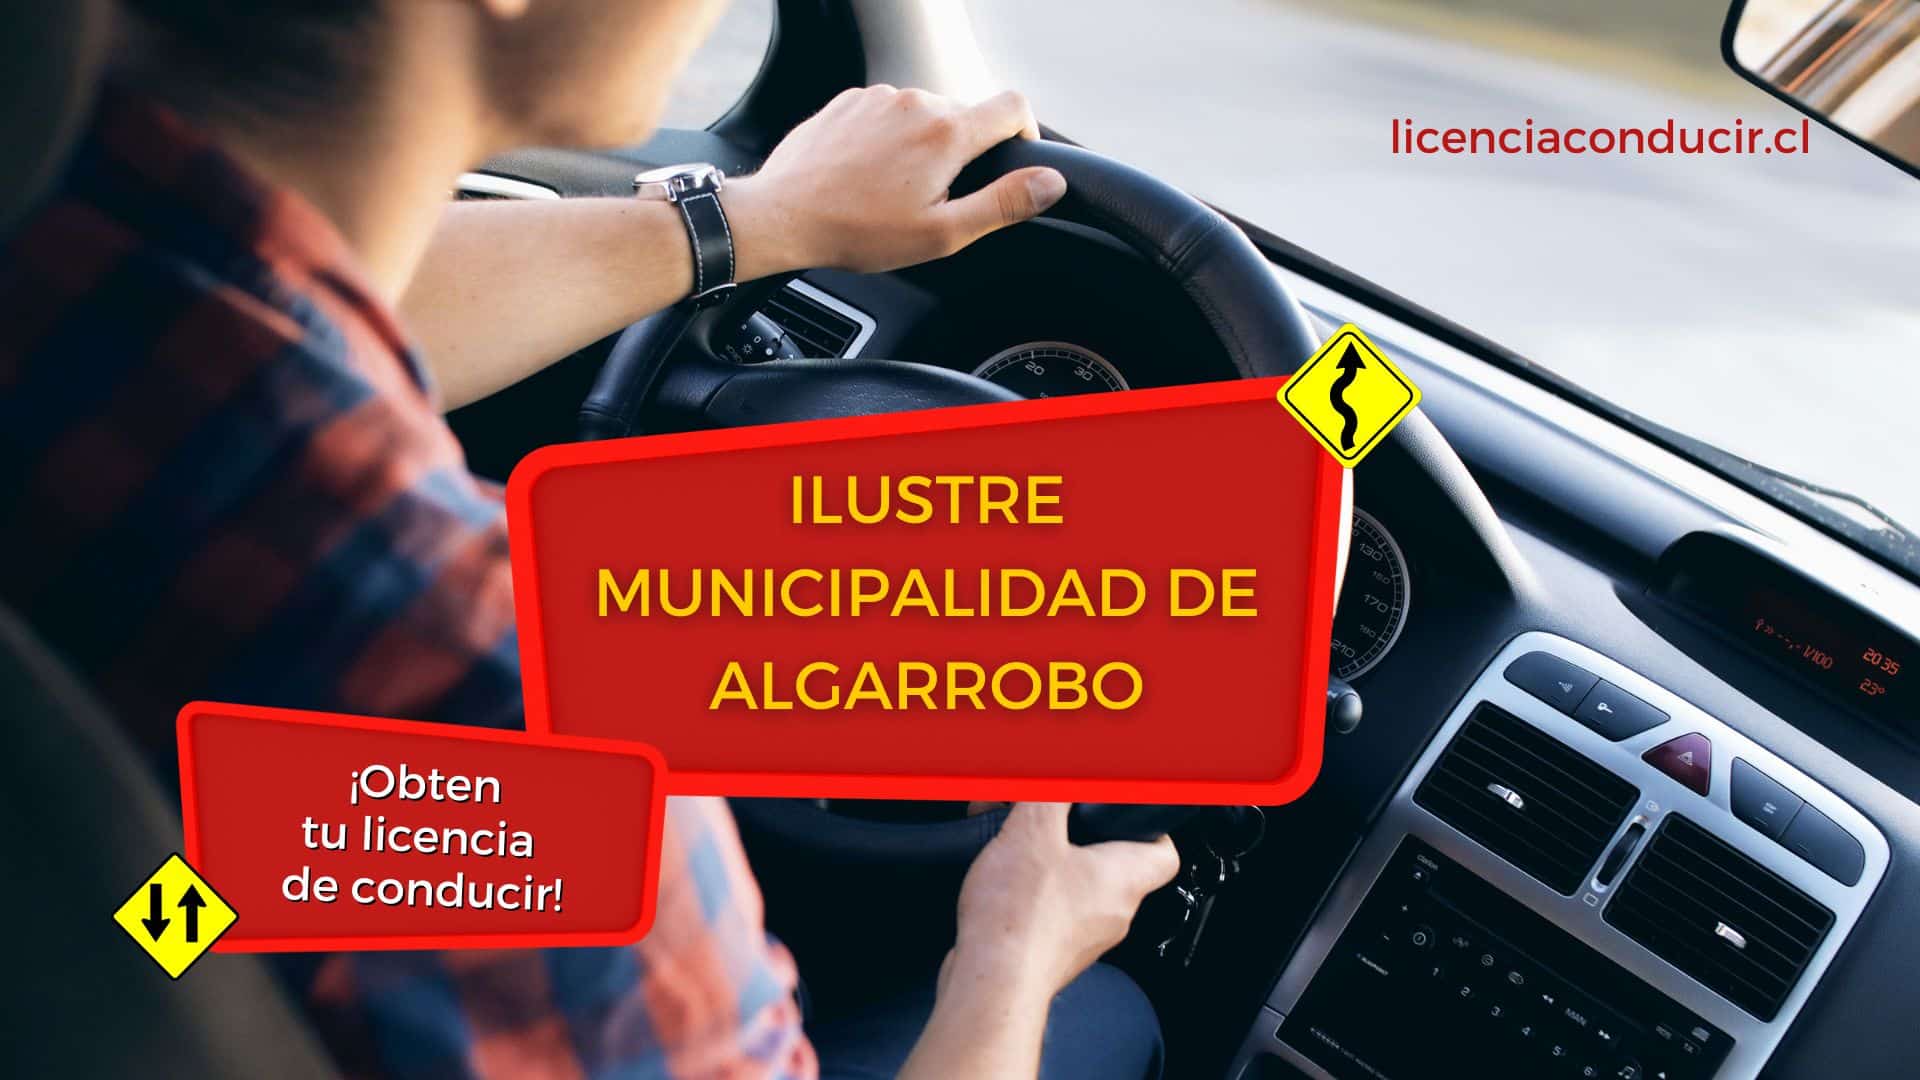 Obtener licencia conducir en algarrobo